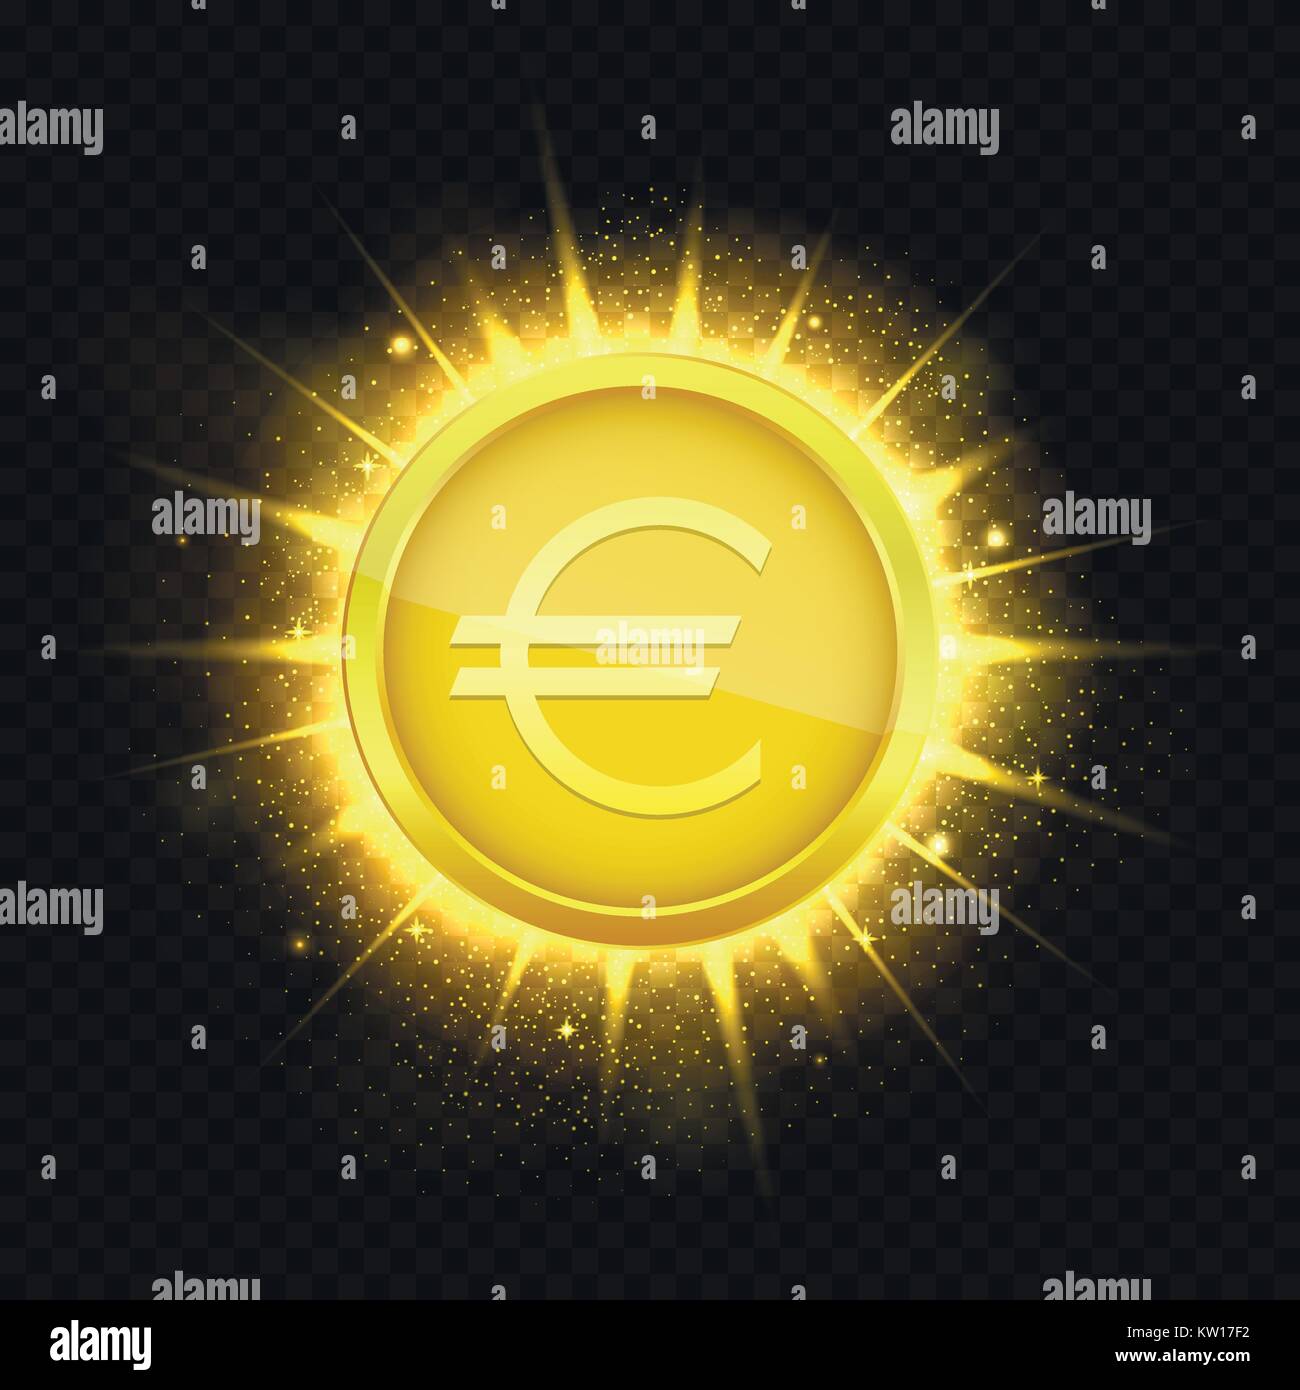 Golden euro coin3 Stock Vector